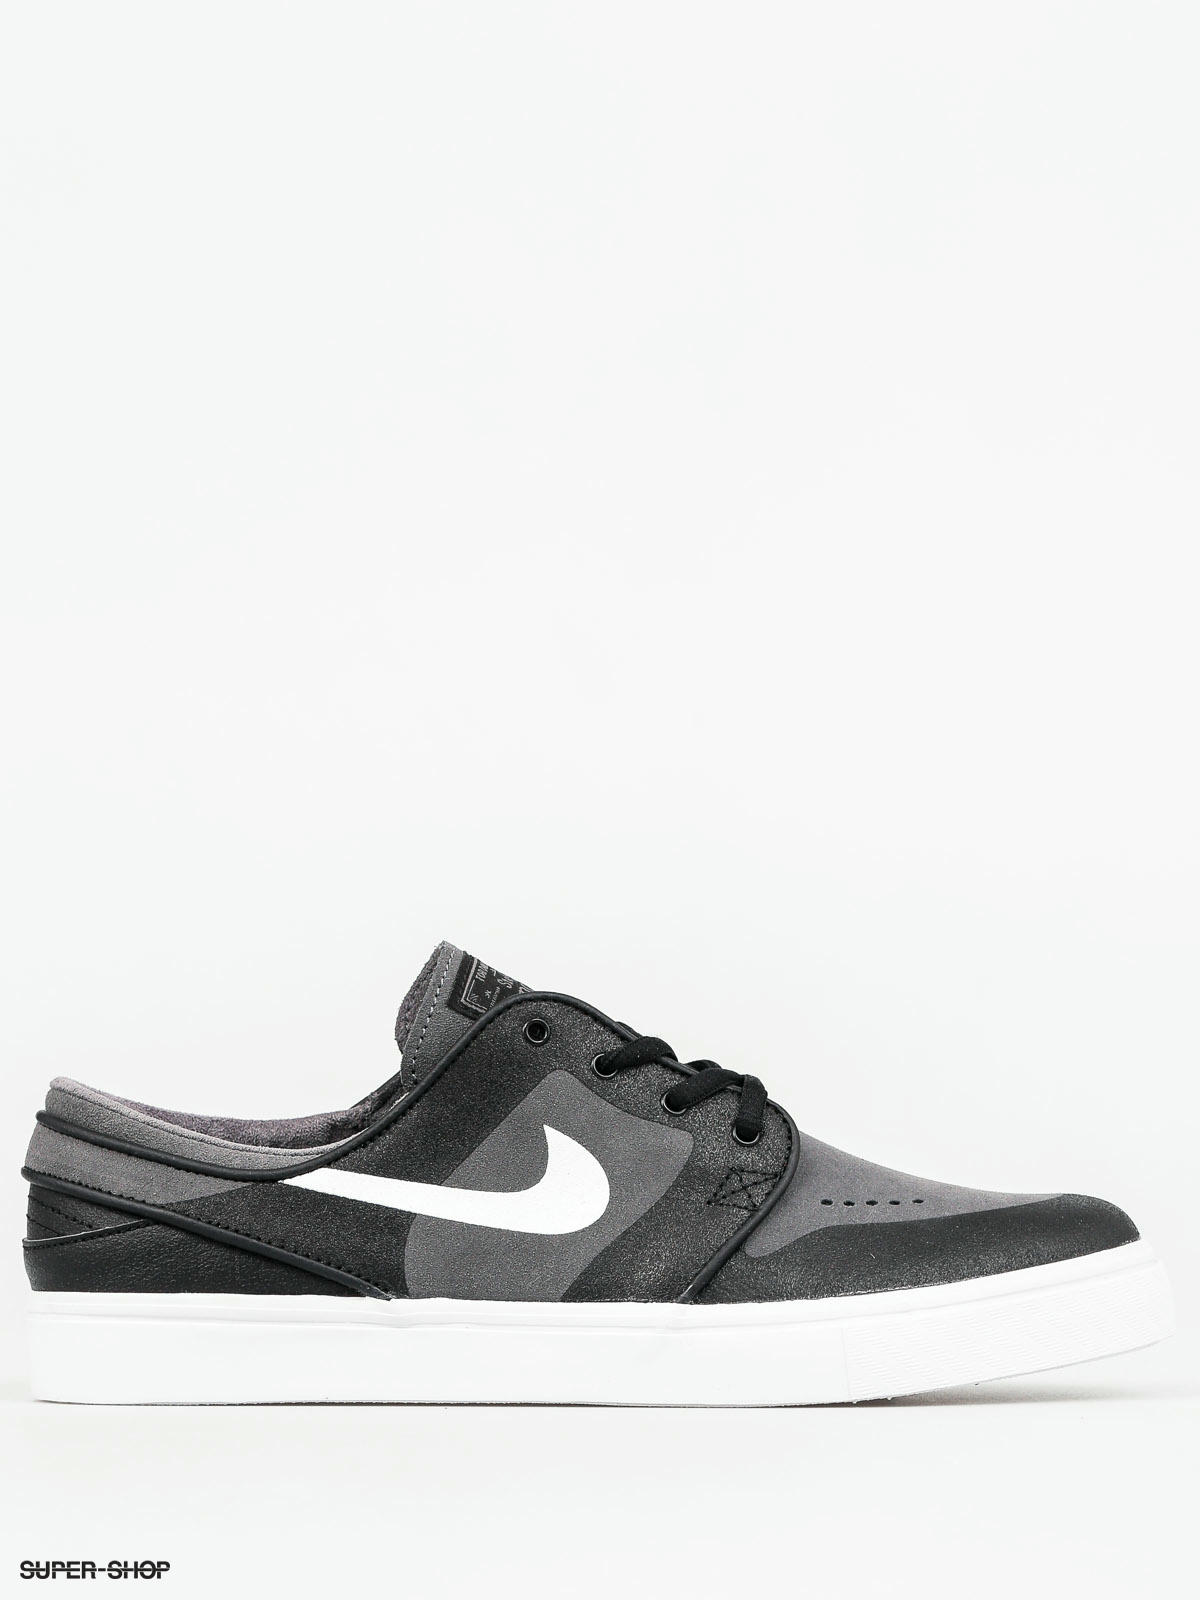 SB Shoes Janoski Elite (dark grey/white black)